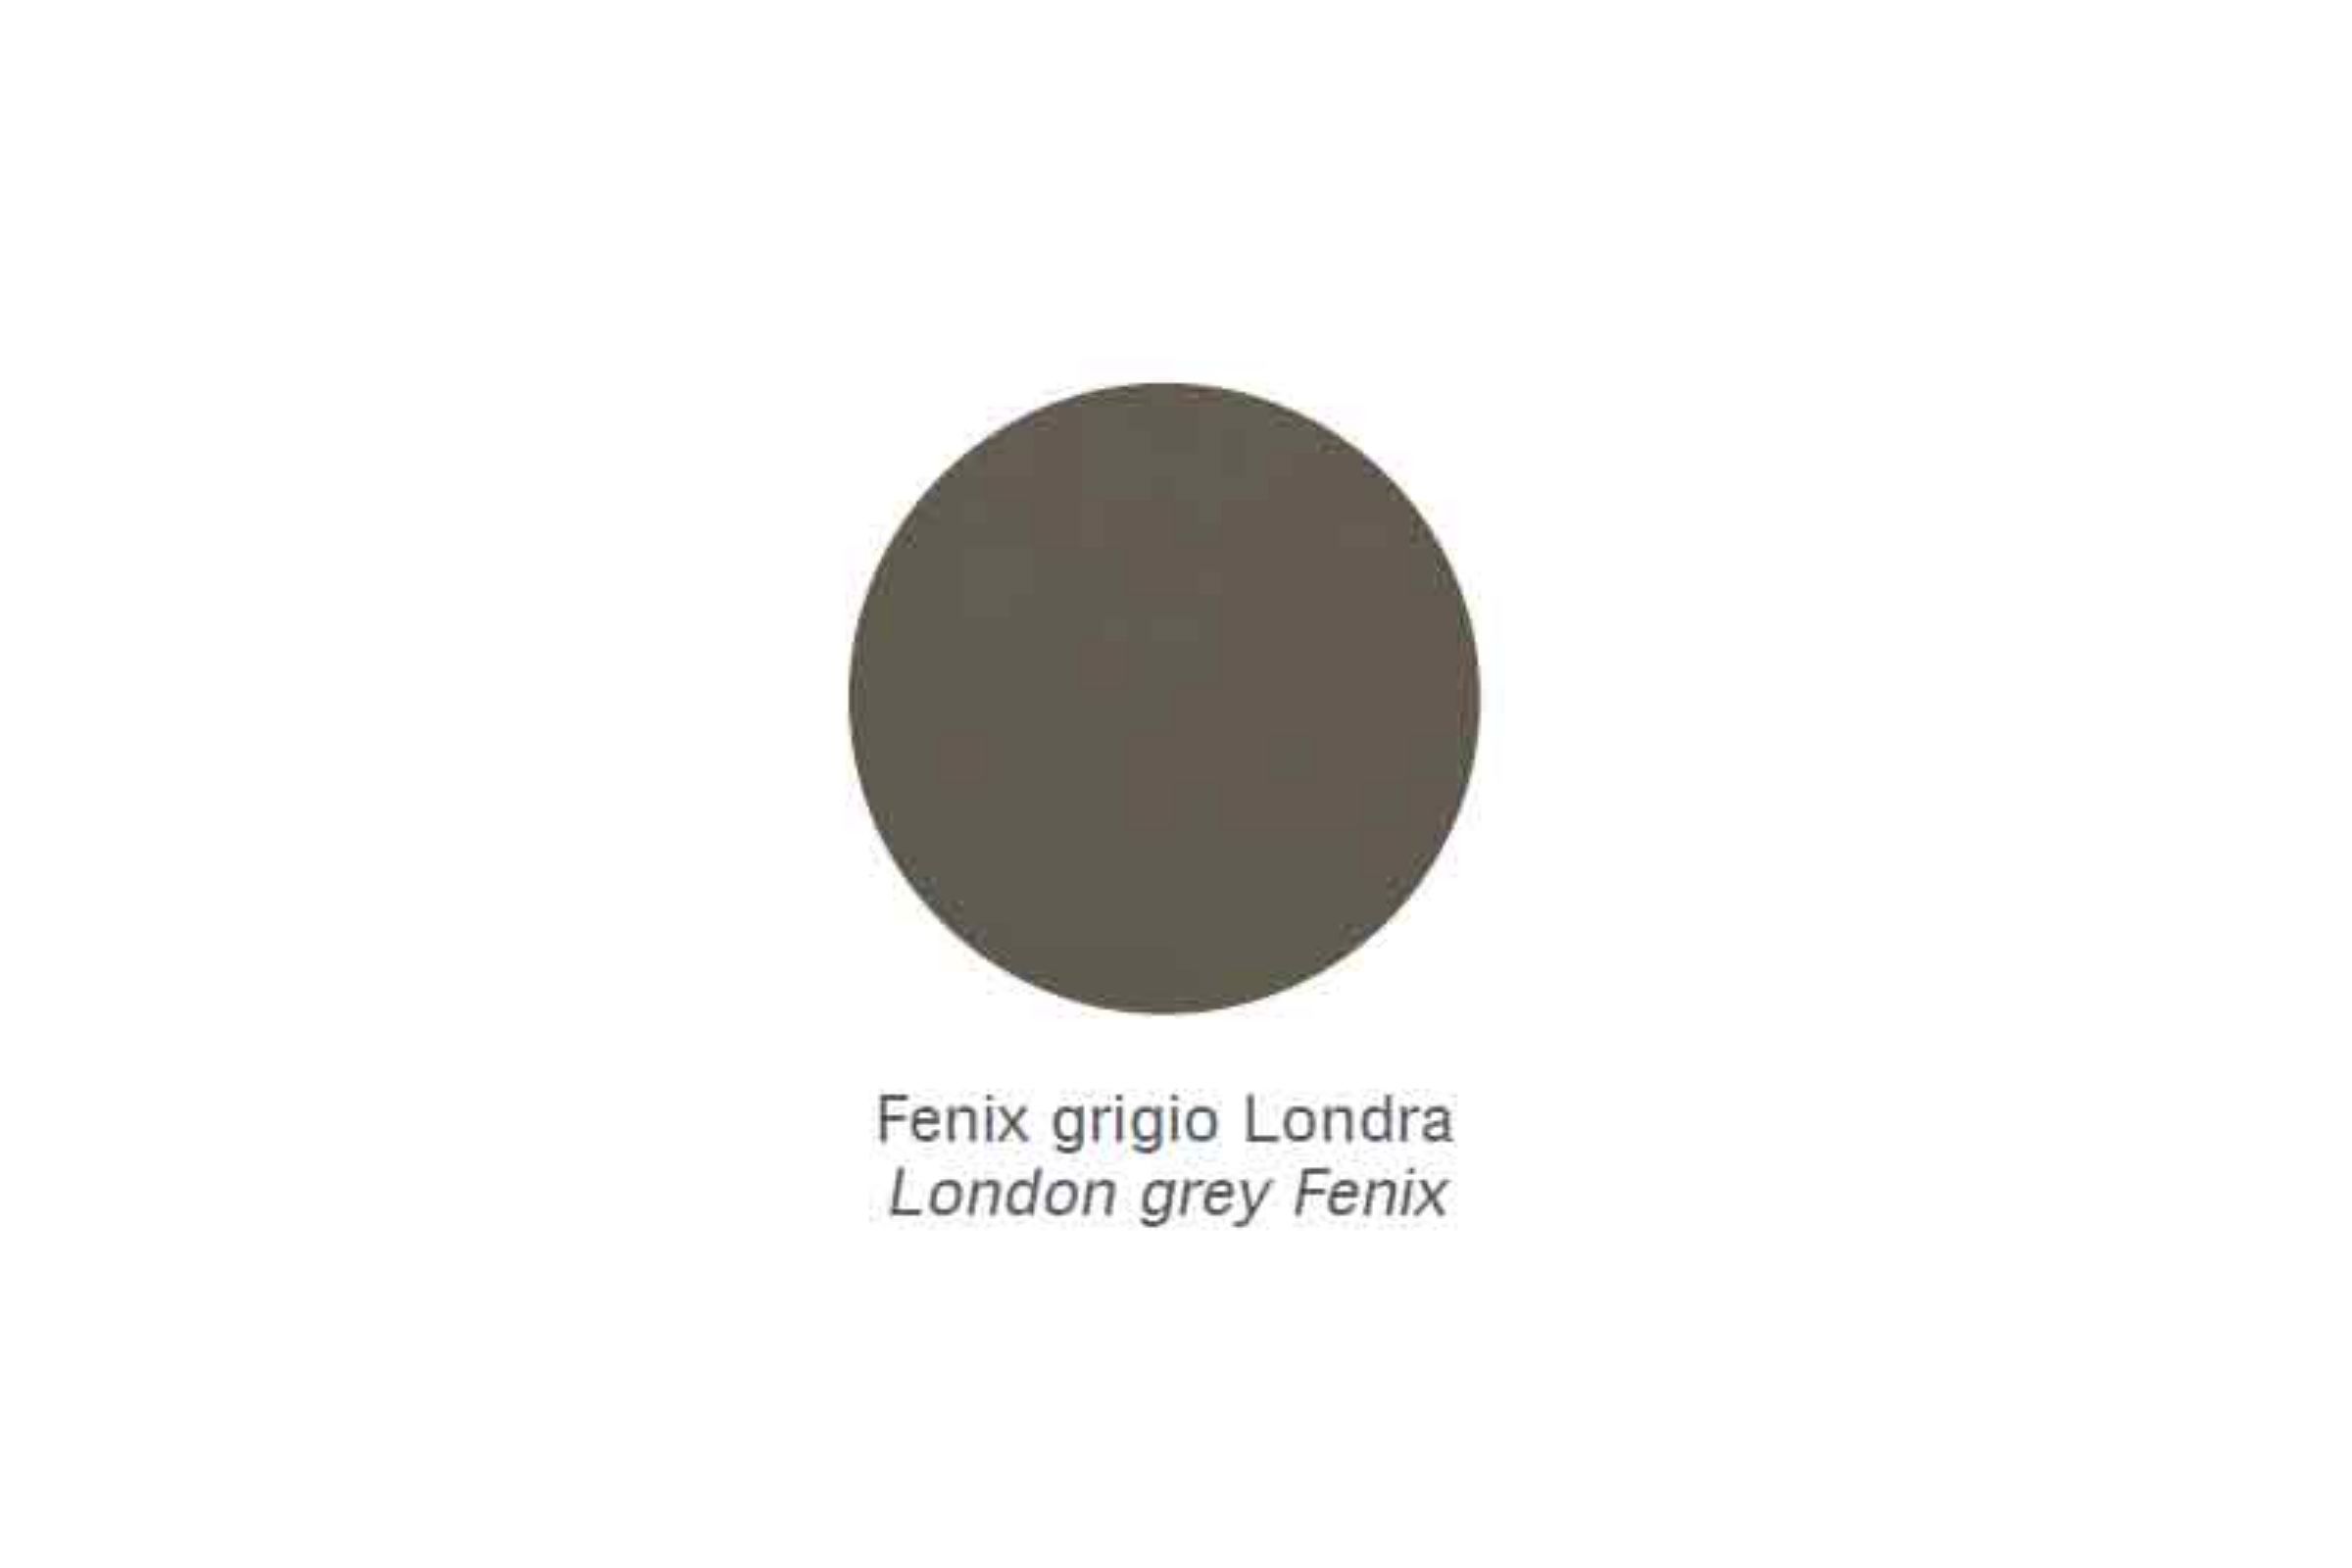 Mensola Zen /45 - Mensola Zen /45 Fenix grigio Londra